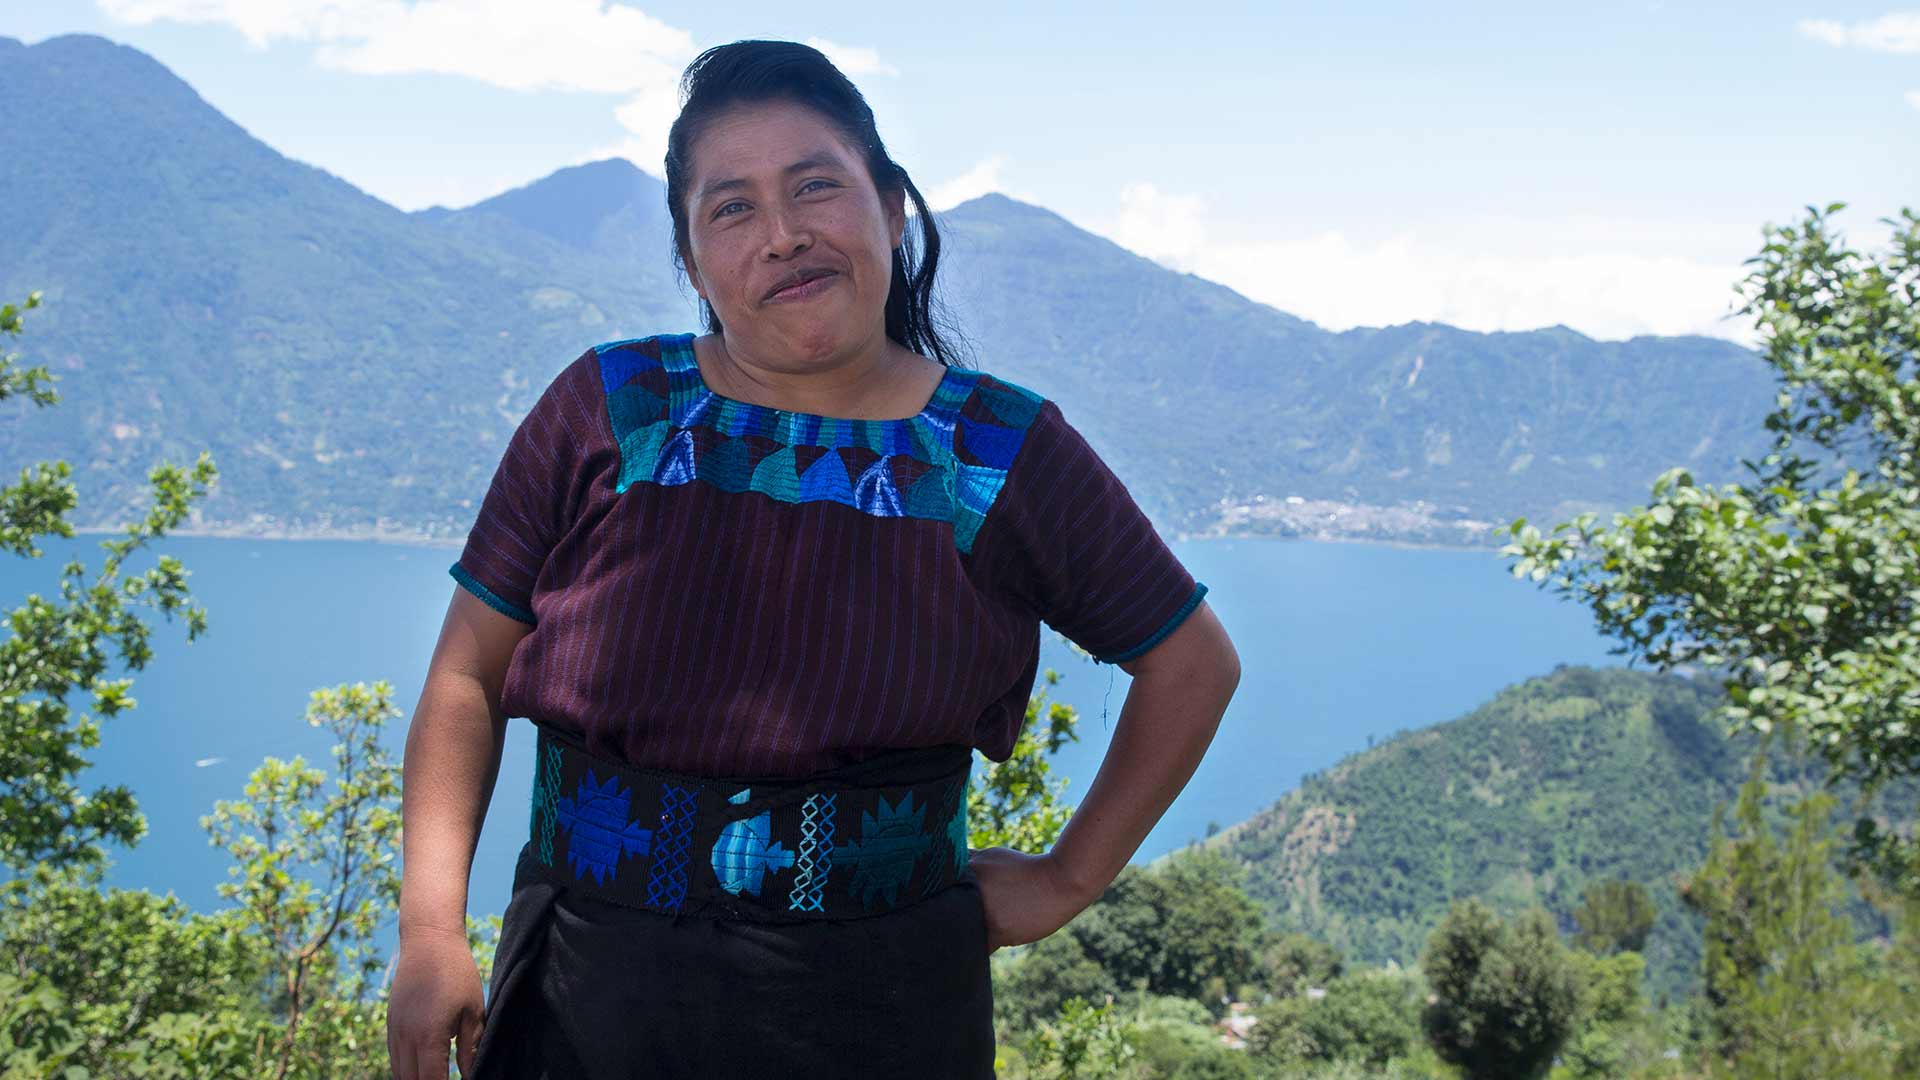 Lucía driver ett småföretag som tillverkar smycken i Guatemala